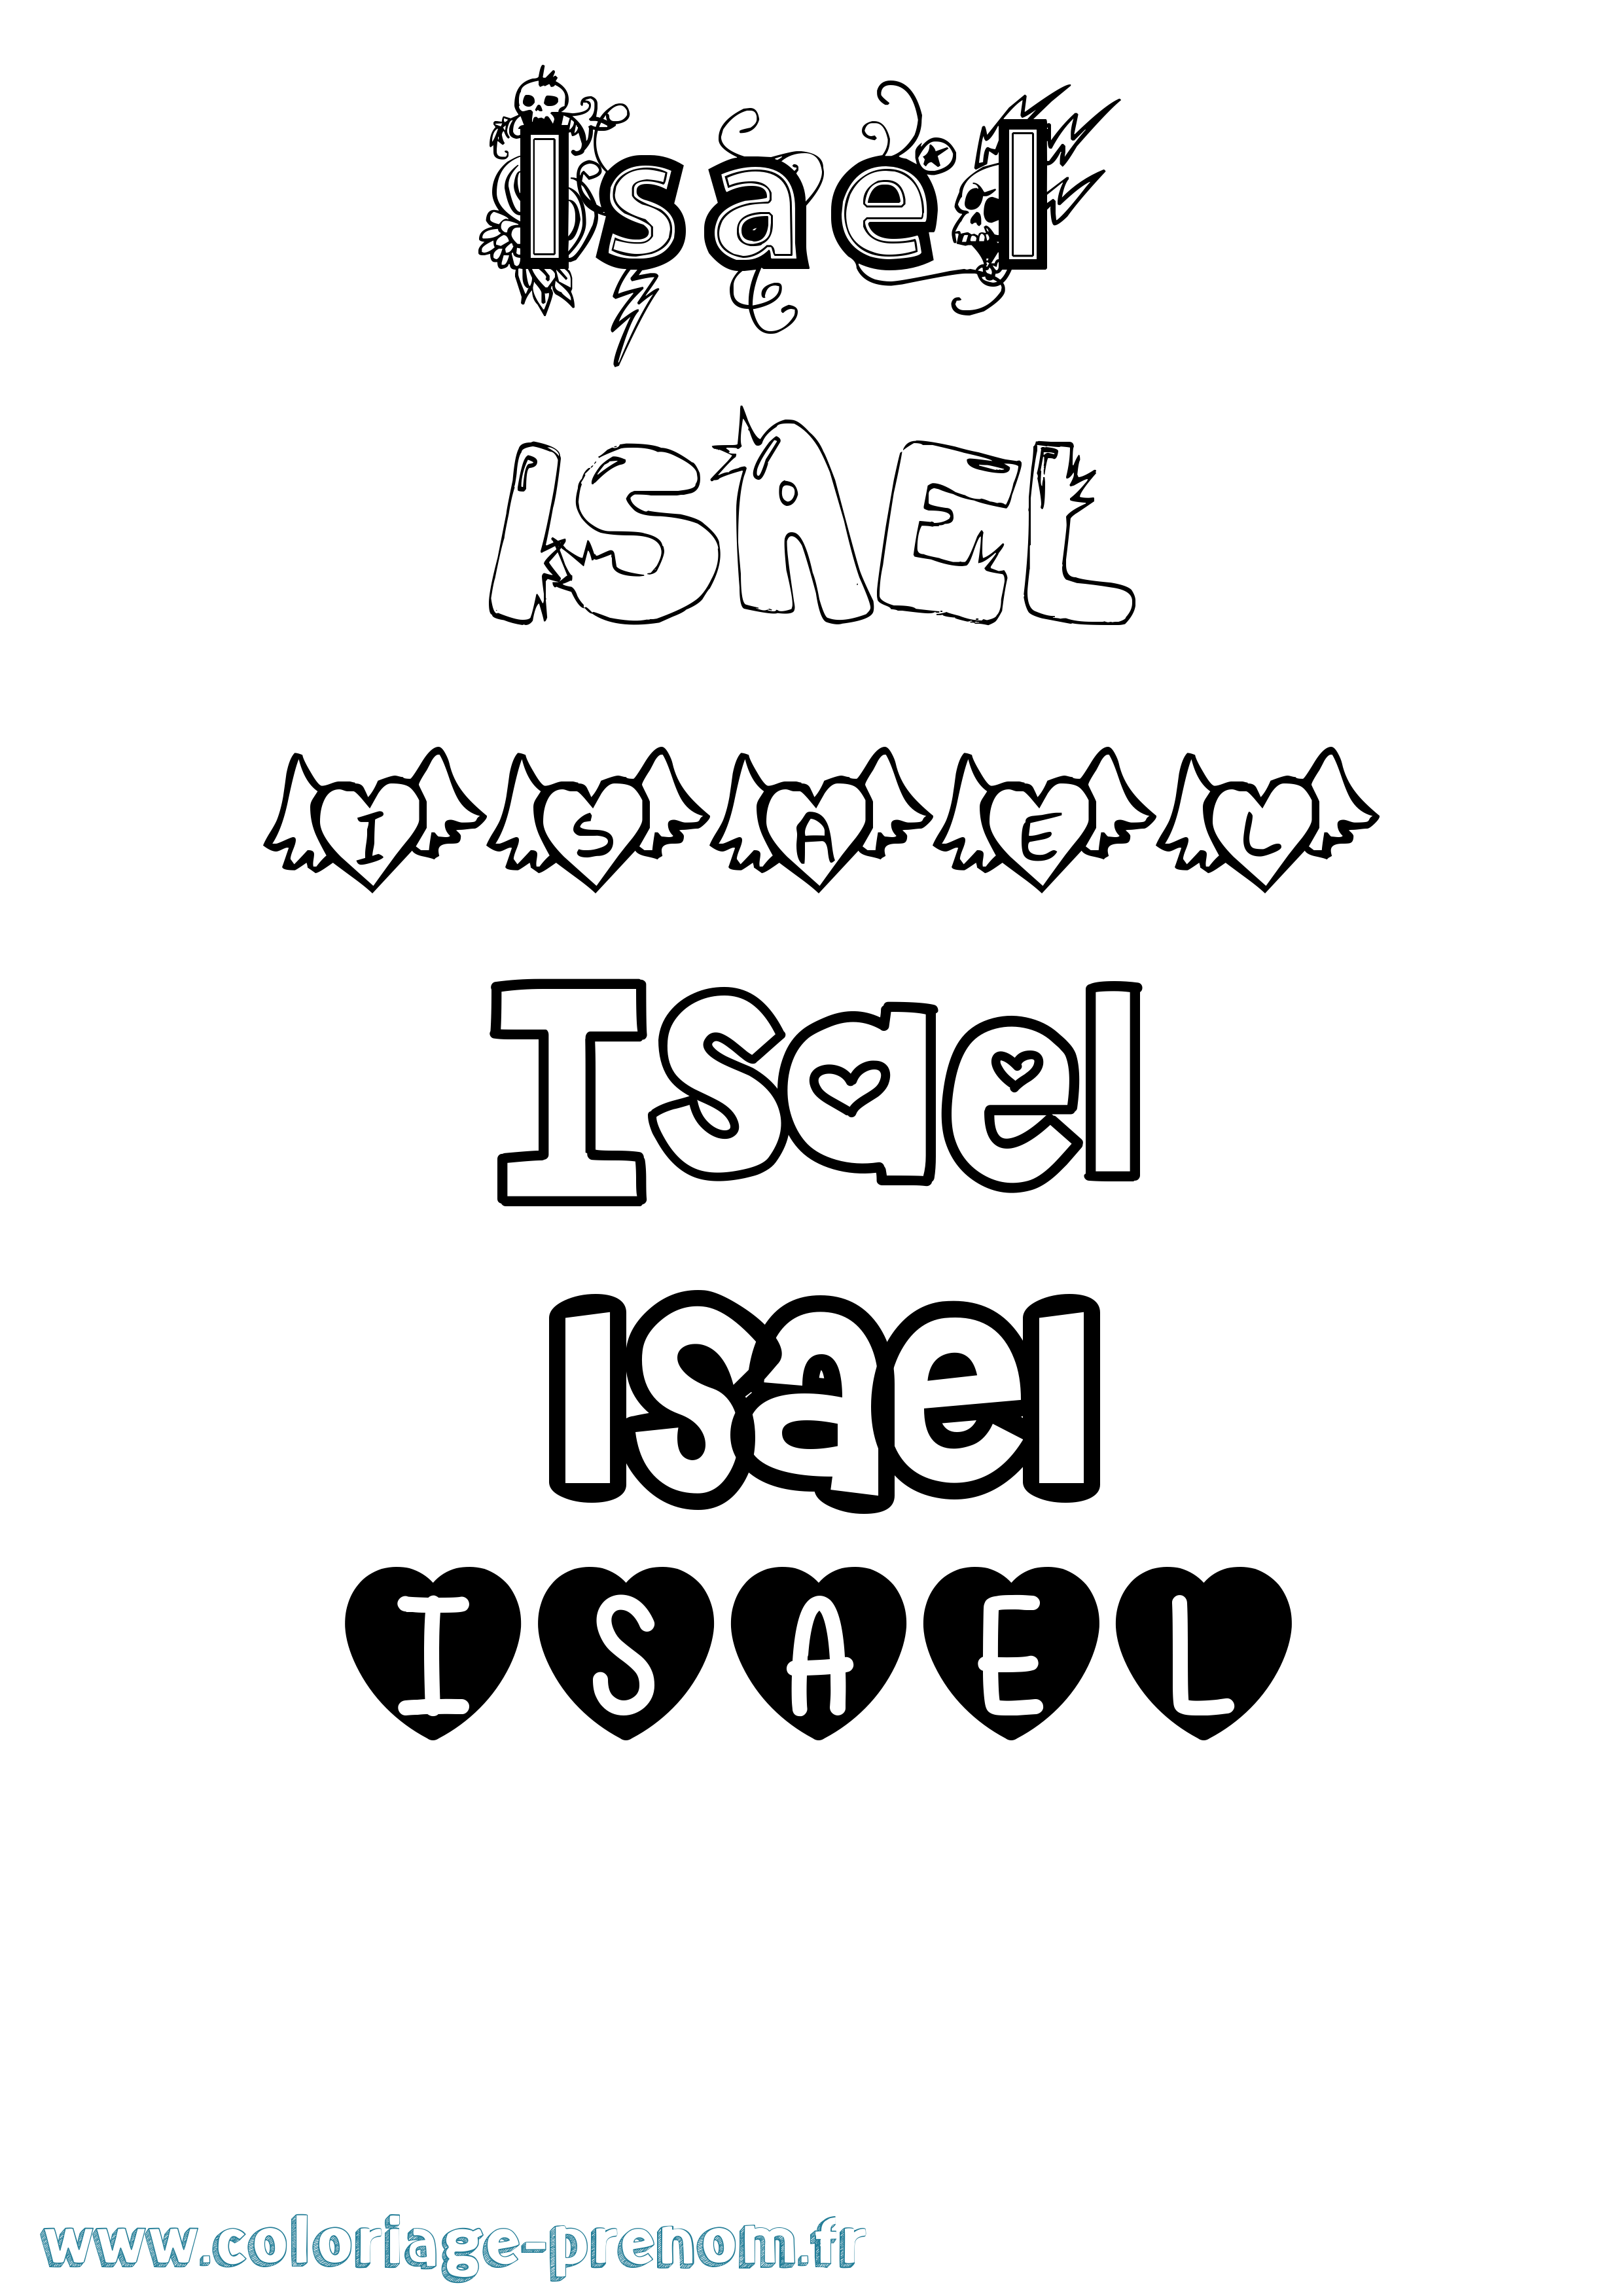 Coloriage prénom Isael Girly